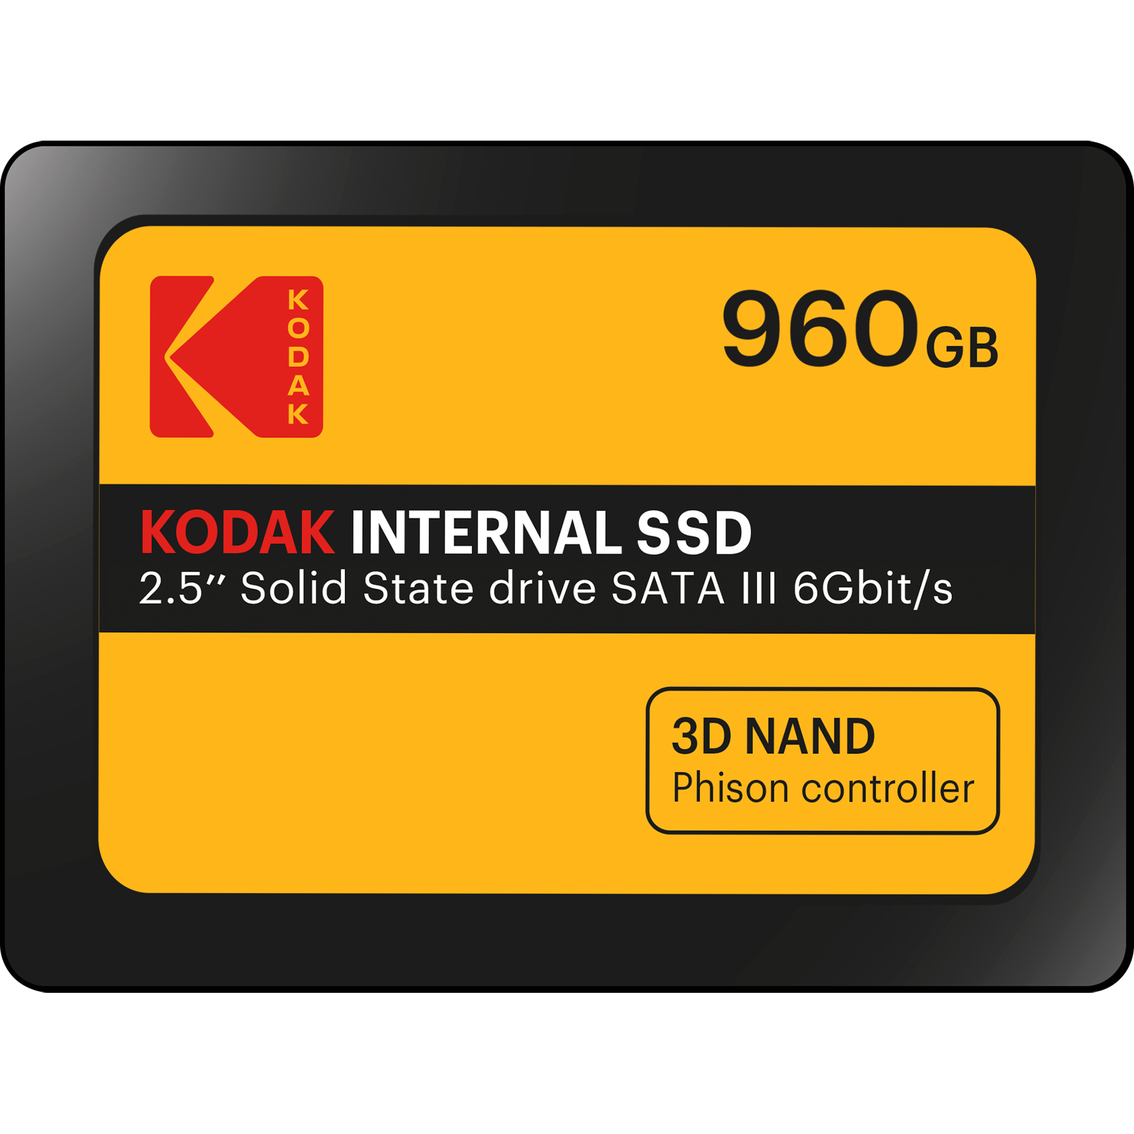 Kodak Internal SSD X150 960GB - Image 1 of 3